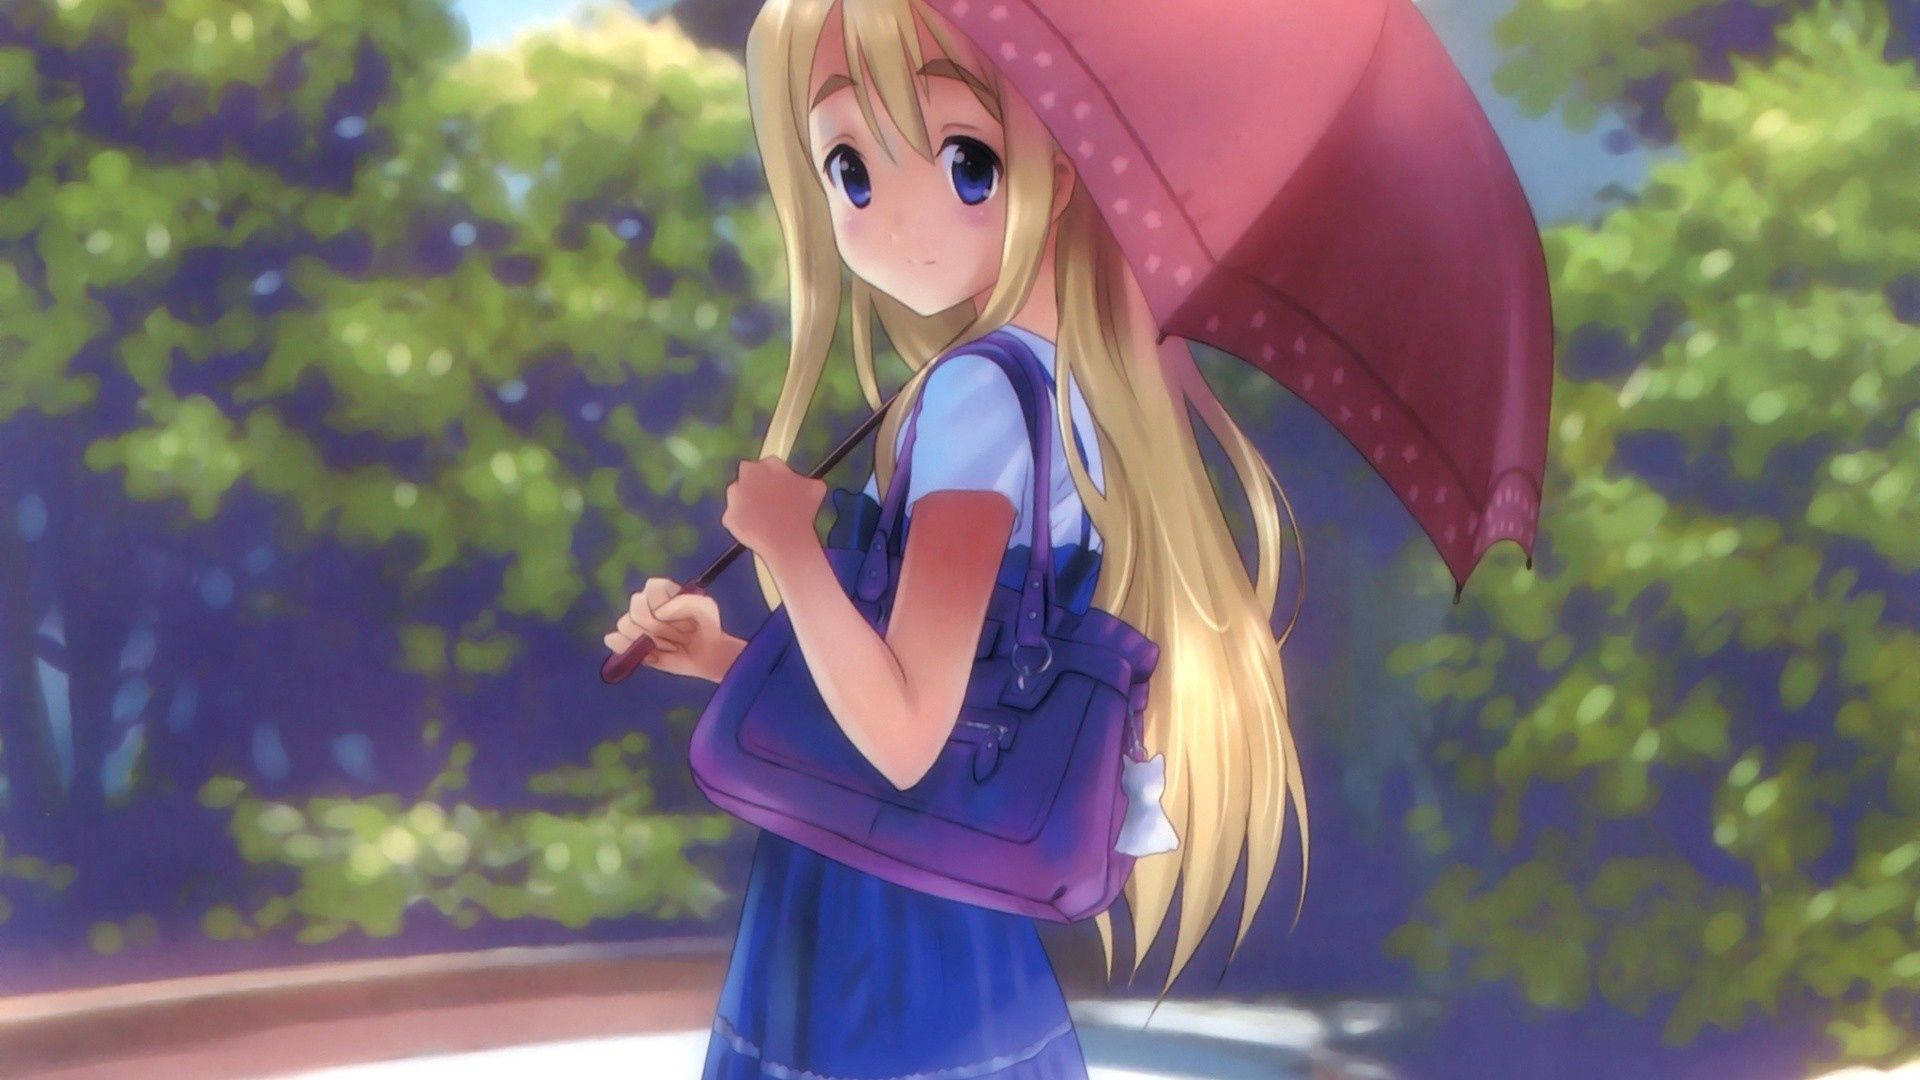 Pretty Blonde Anime Umbrella Girl